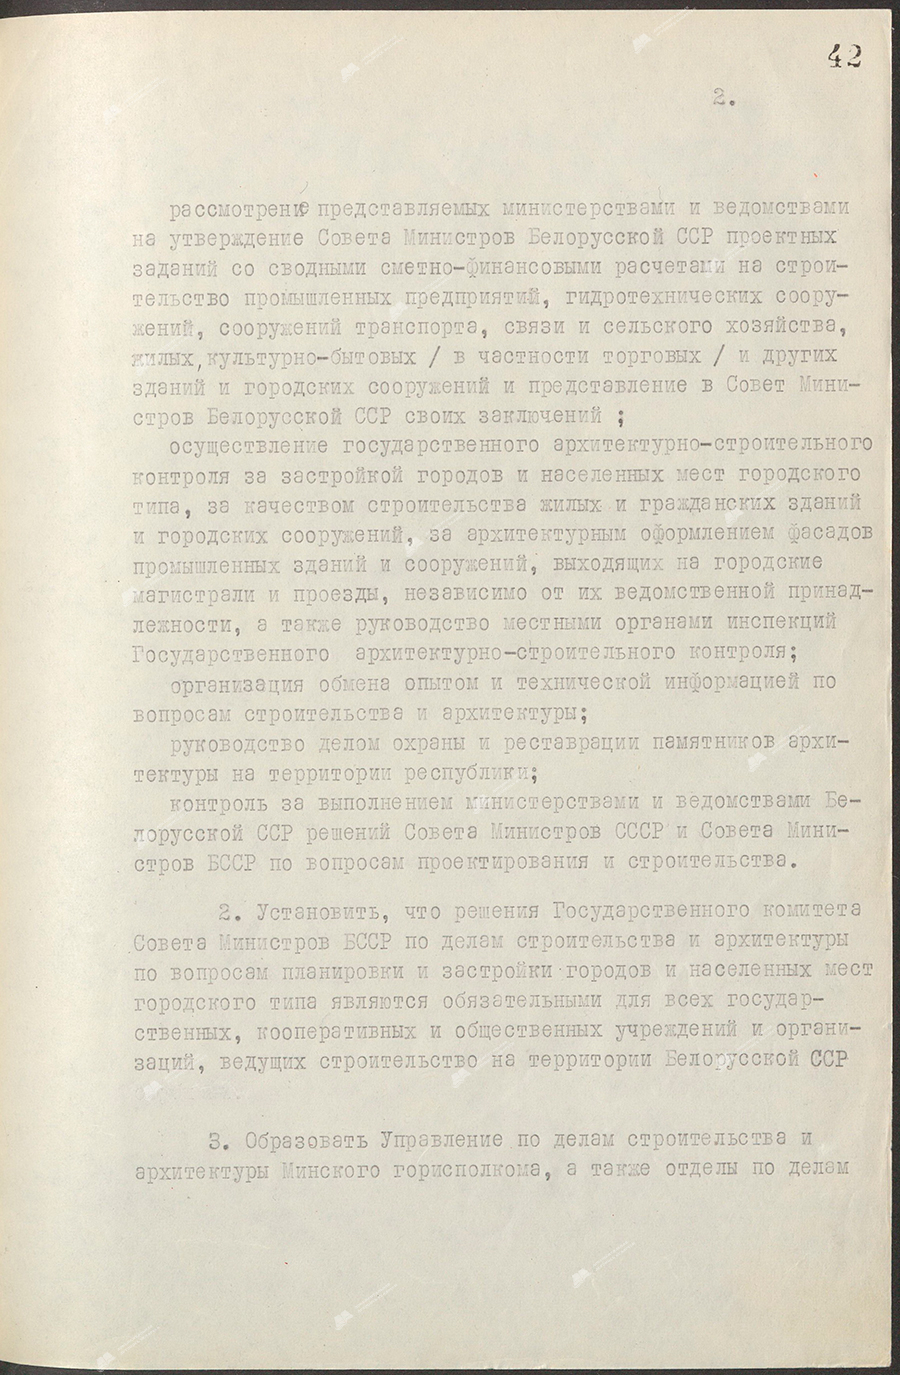 Beschluss Nr. 544 des Ministerrats der Weißrussischen SSR «Über die Bildung des Staatskomitees des Ministerrats der BSSR für Bauwesen und Architektur»-стр. 1